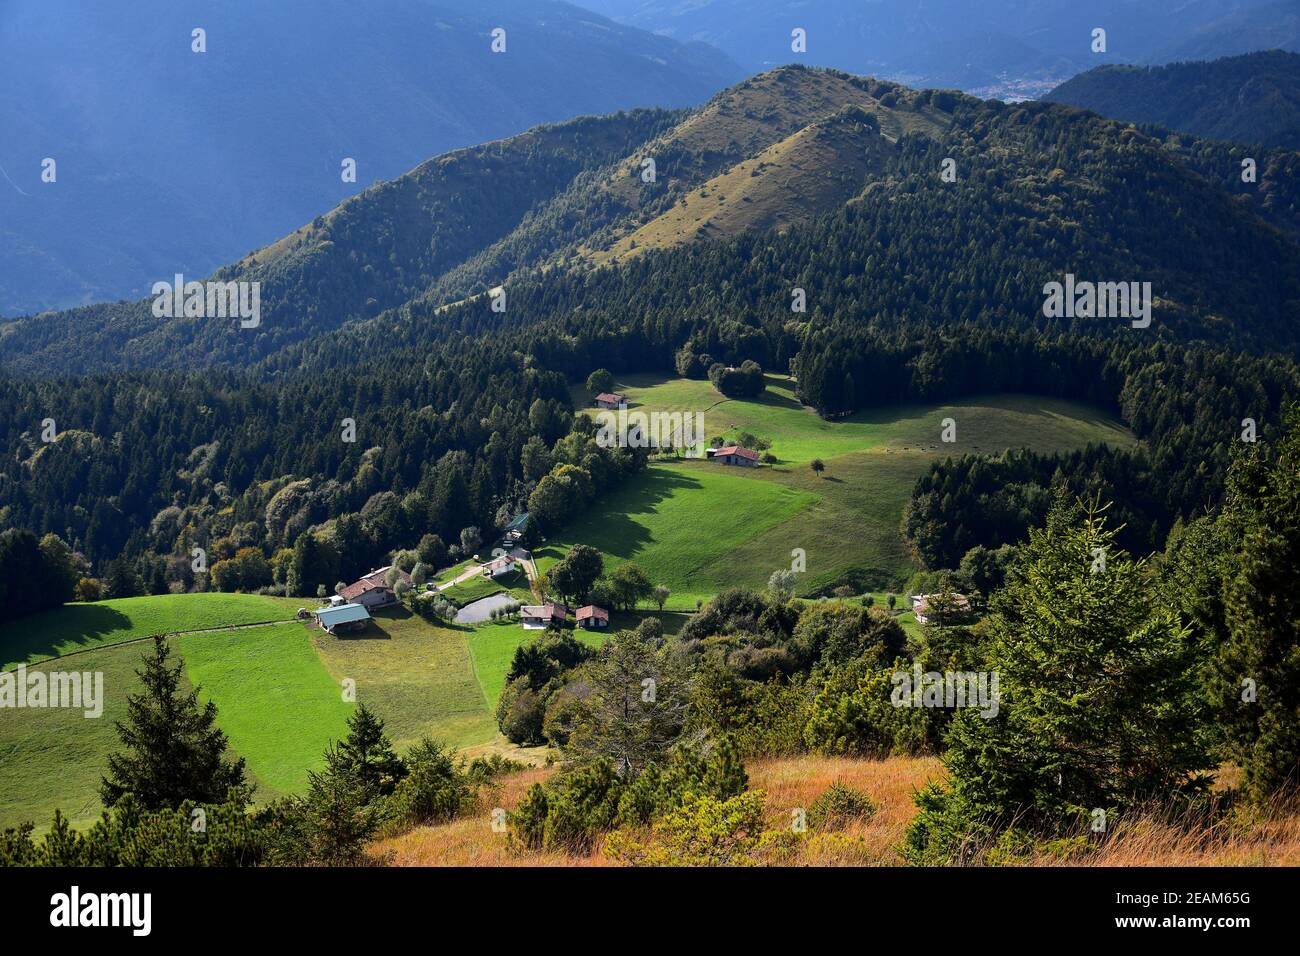 Vista dal Monte Colombina. La Chiesetta San fermo e alcune case. Bossico, Bergamo, Lombardia, Italia. Foto Stock